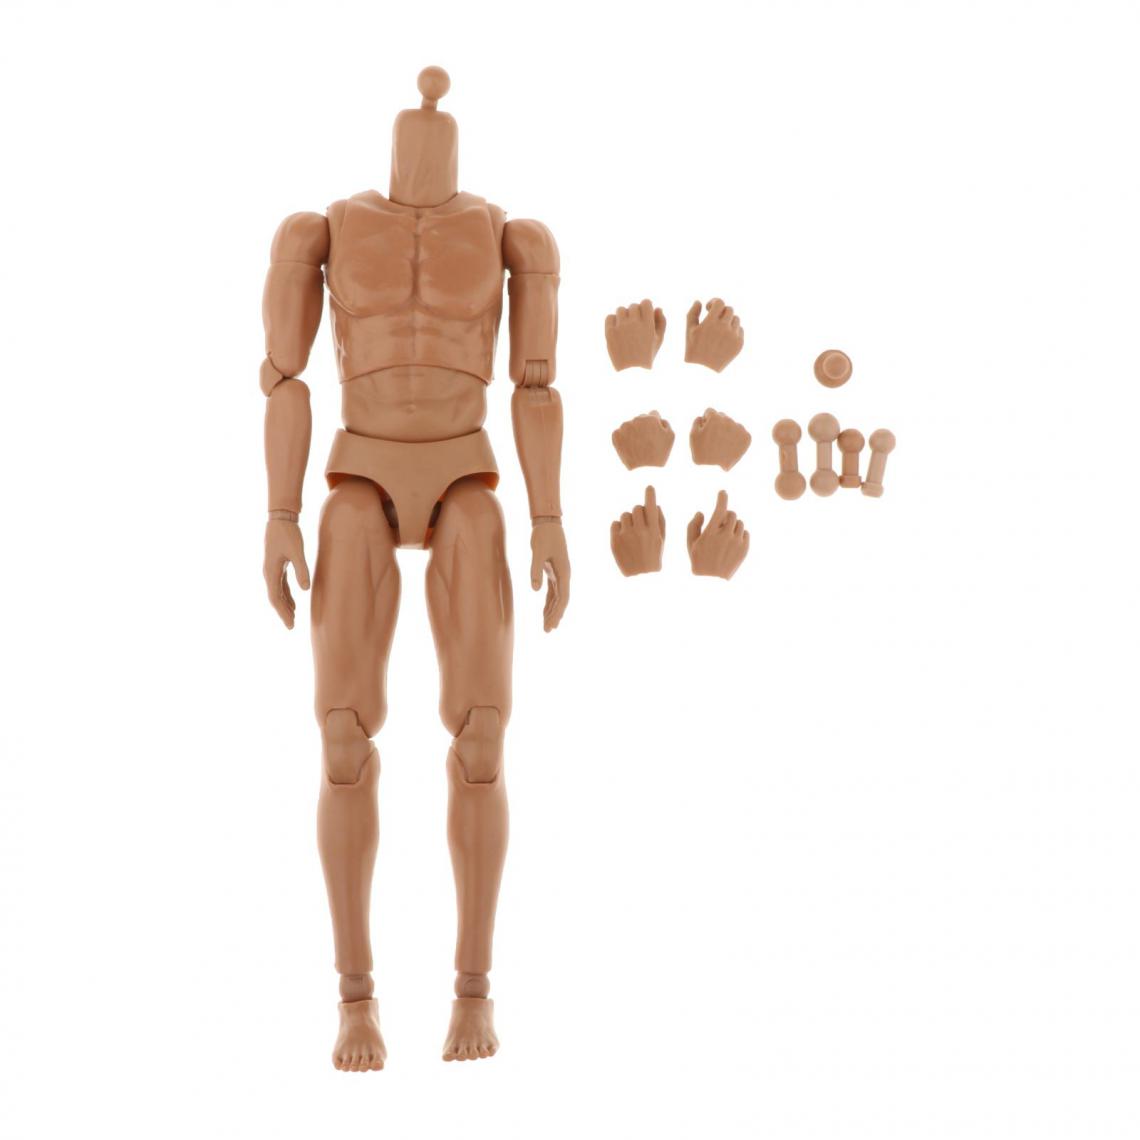 marque generique - 1/6th Échelle Super-Flexible Musculaire Mâle Figurines Corps 28CM Hauteur avec Mains de Rechange - Films et séries